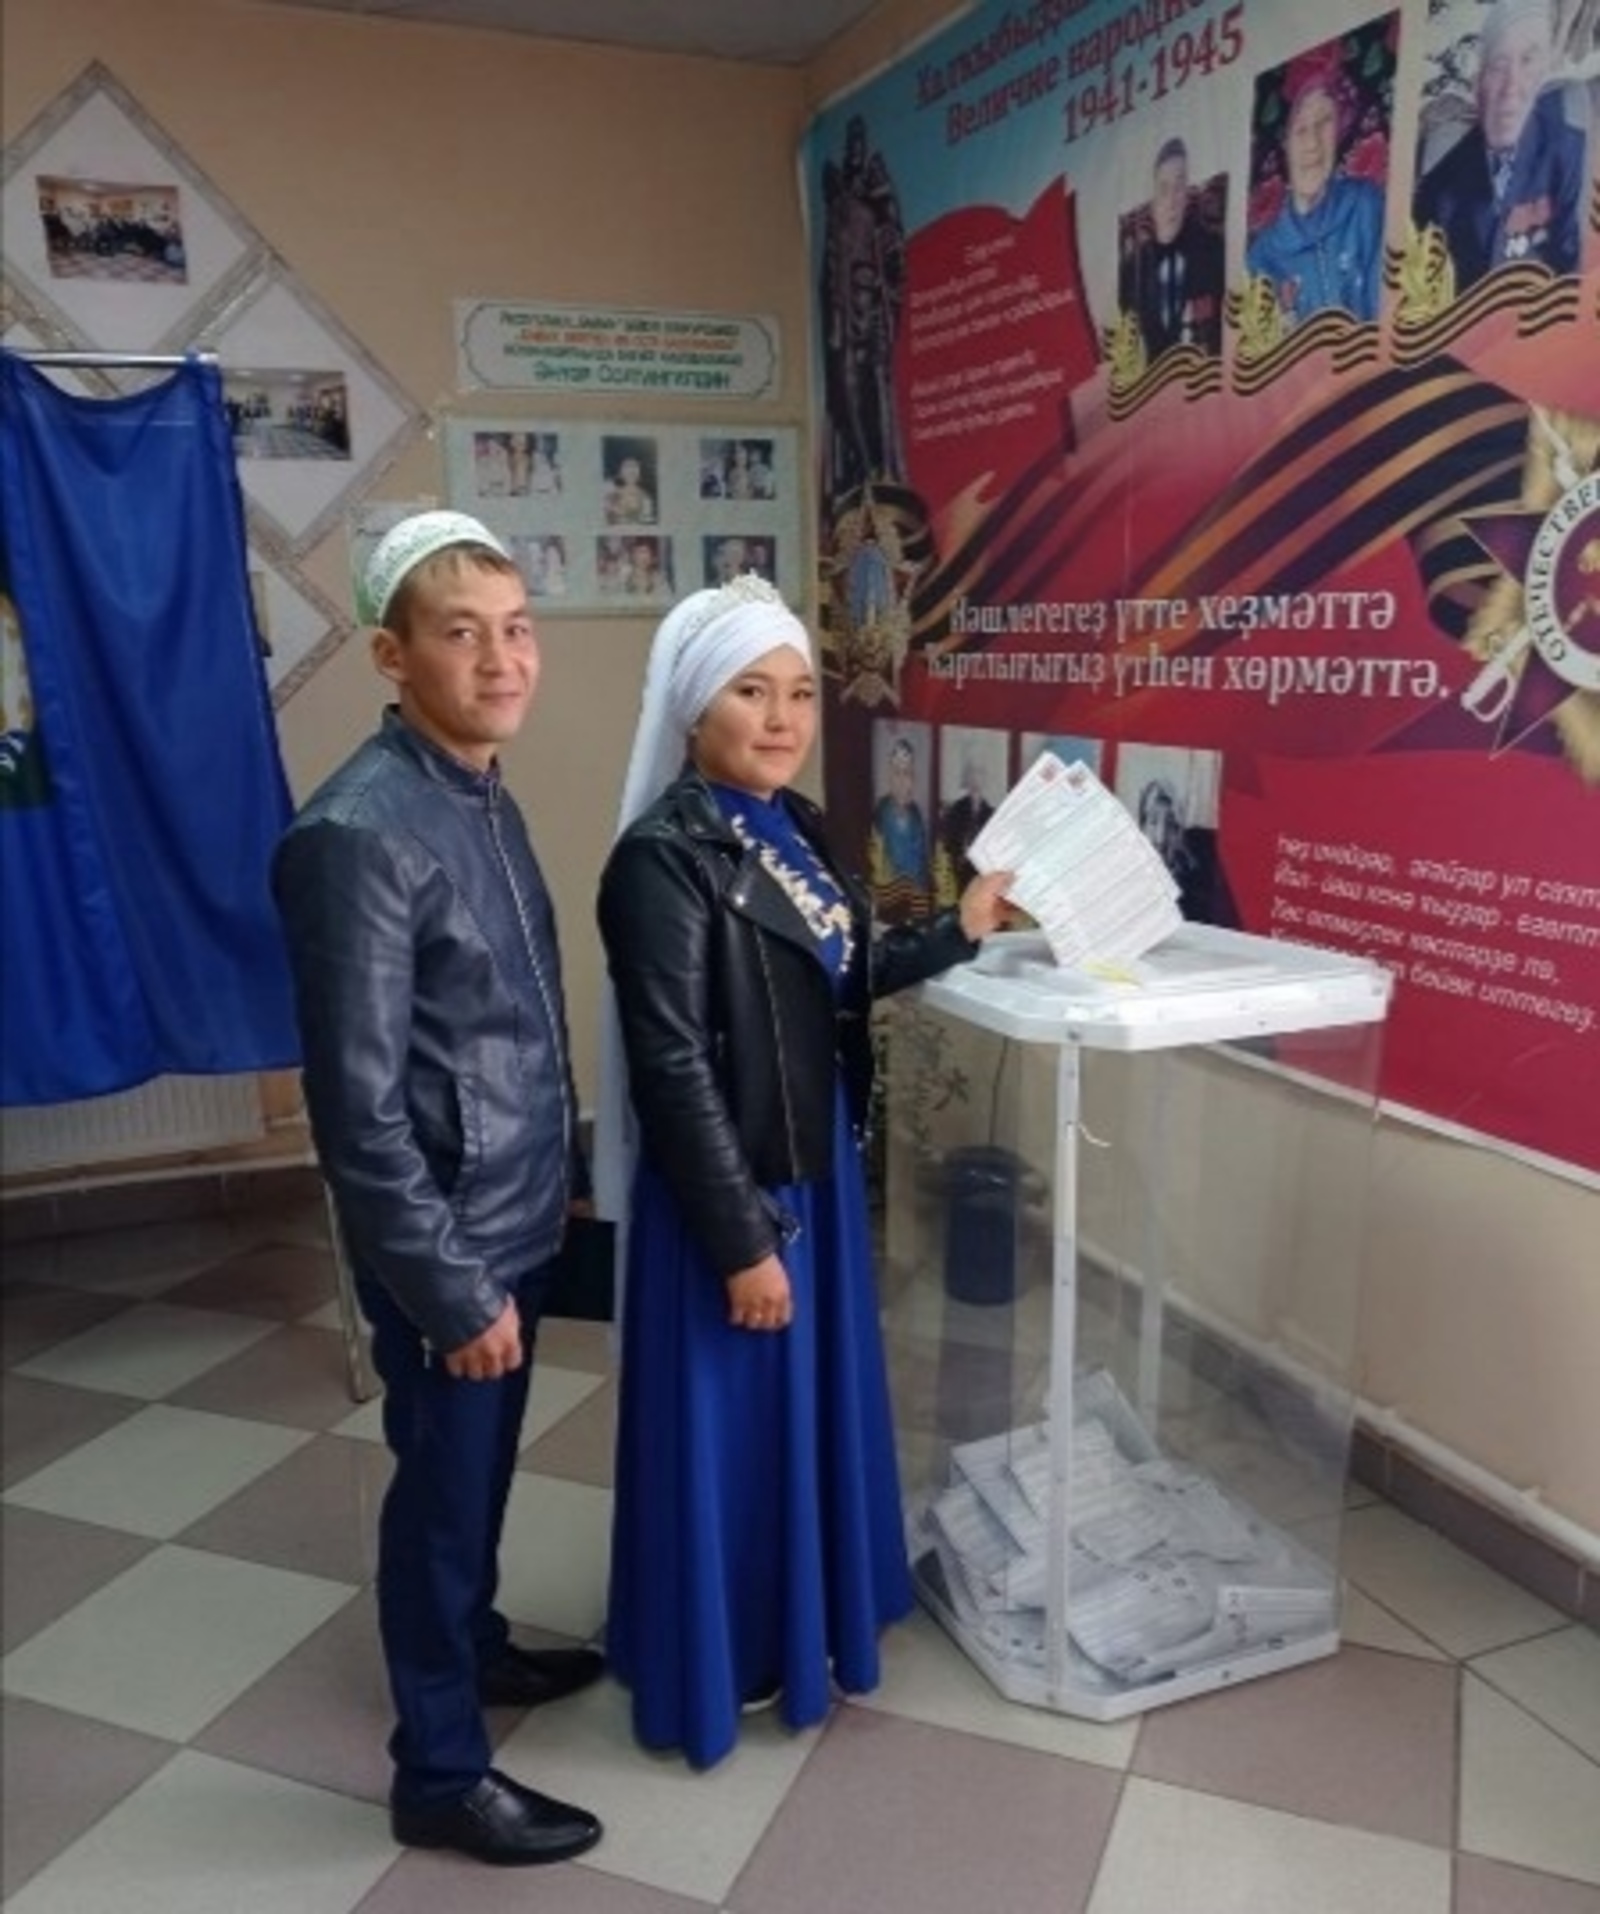 Избирательный участок №1023 расположен в селе Чингизово